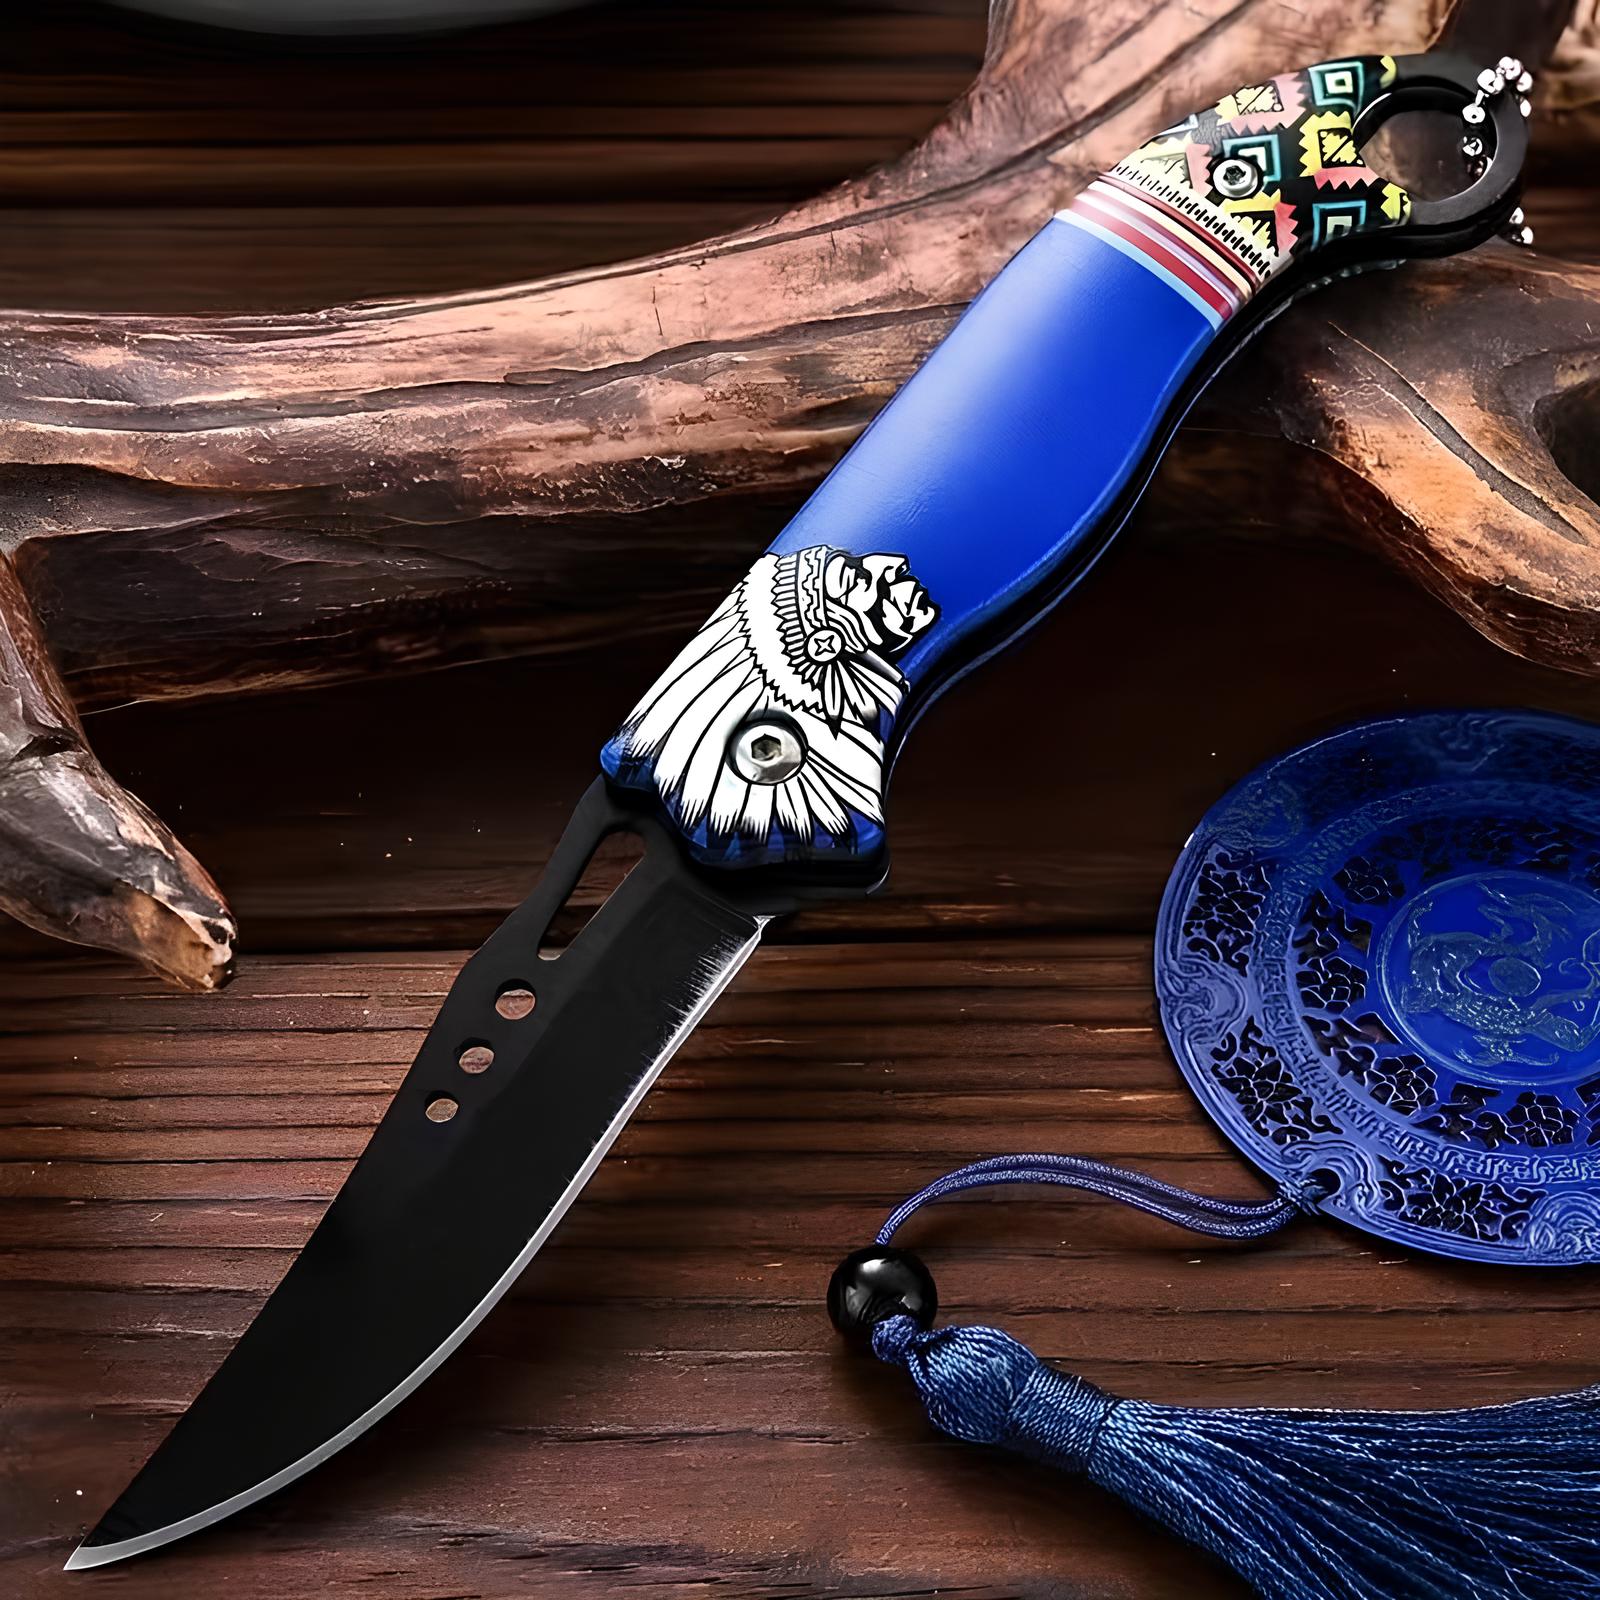 Couteau pliant - L'apache - UstensilesCulinaires